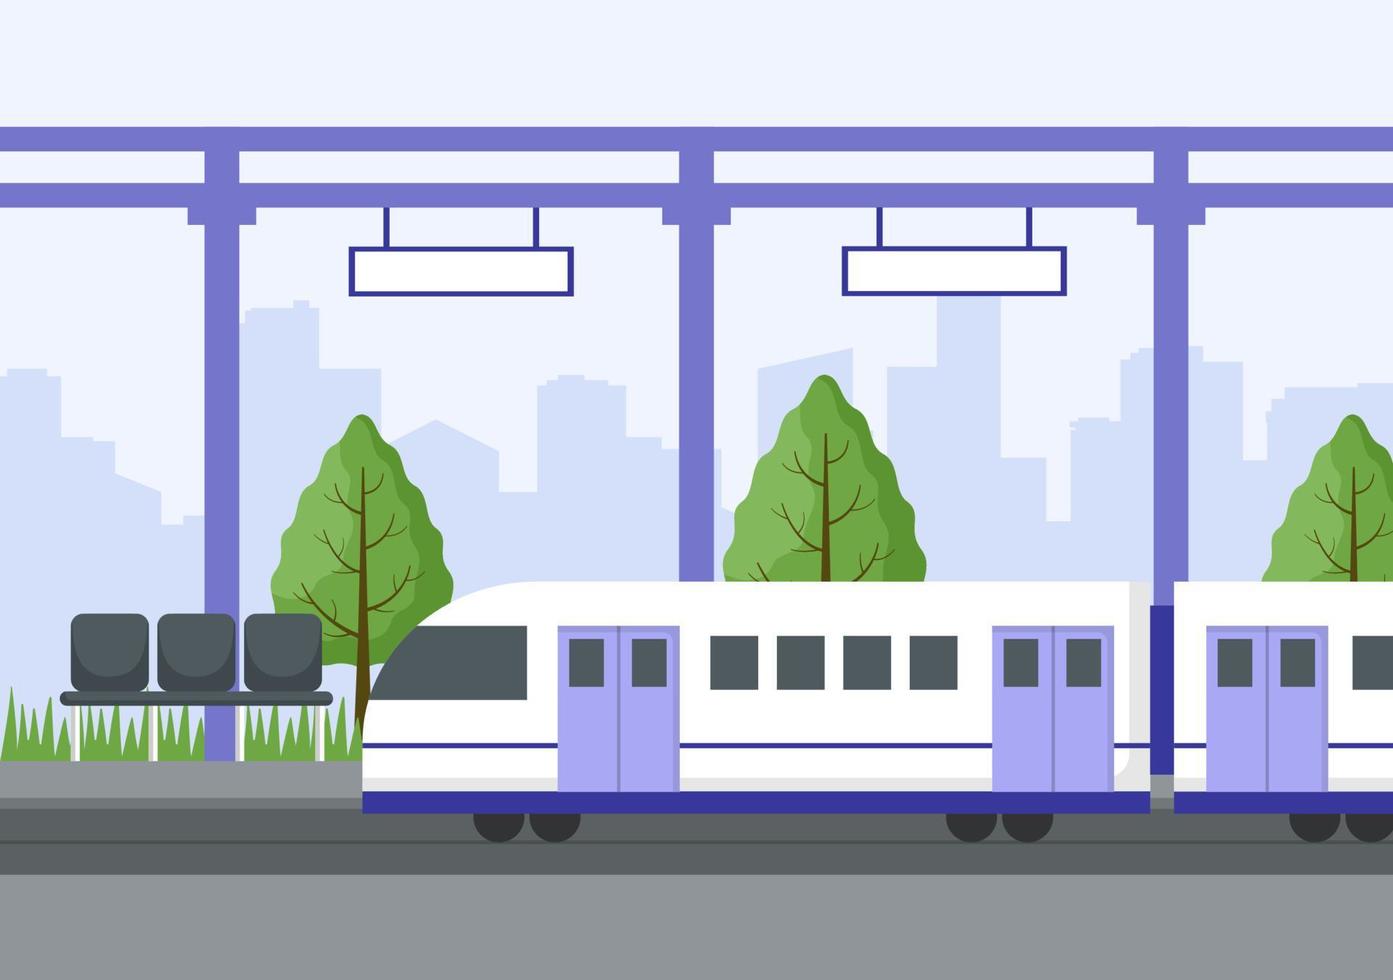 estación de tren con paisaje de transporte de tren, plataforma para la salida y metro interior subterráneo en ilustración de cartel de fondo plano vector